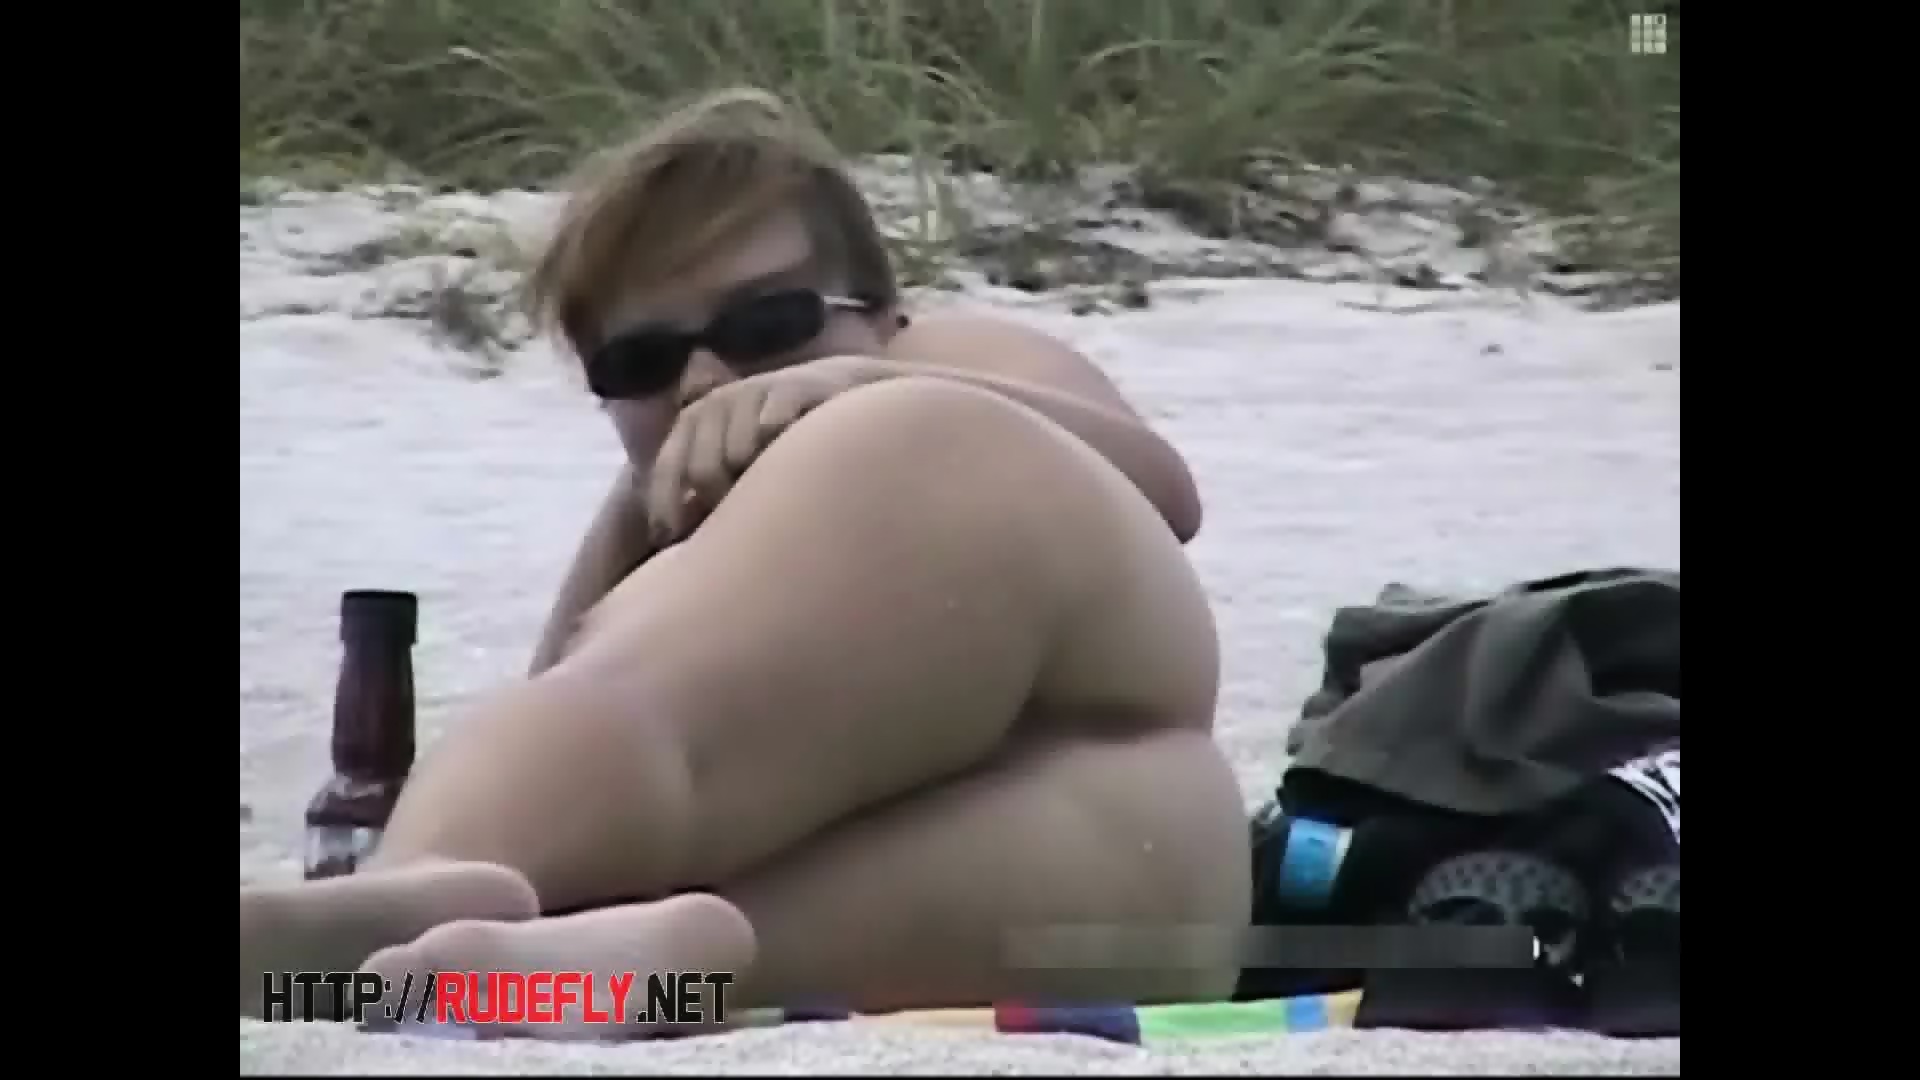 Nude Beach Video Of Splendid Naked Bodies Eporner 